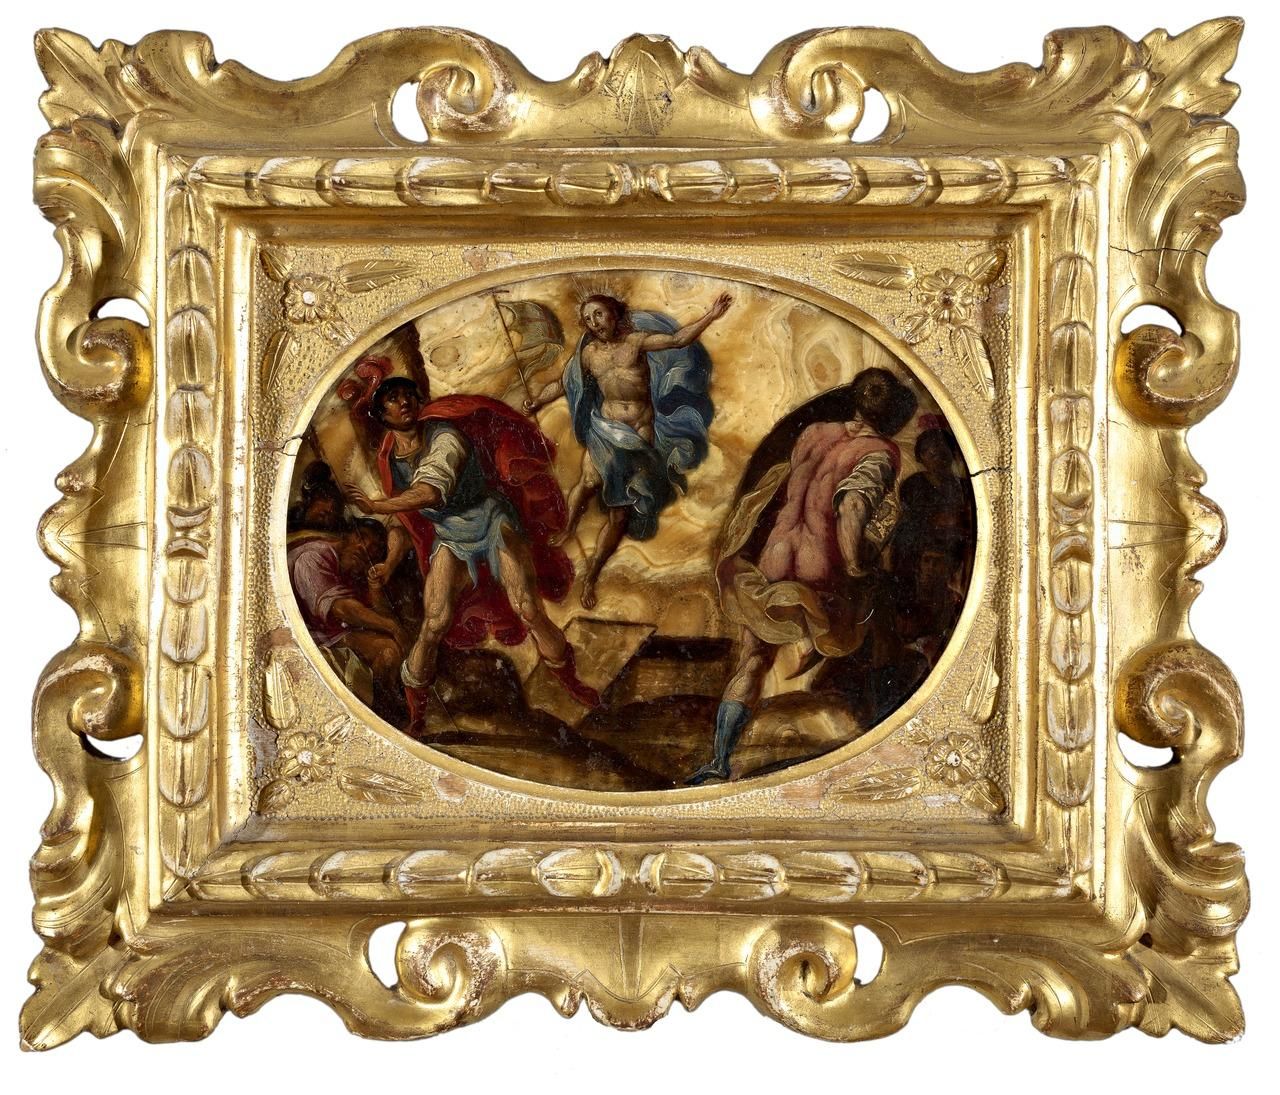 ESCUELA ESPAÑOLA, ff. S.XVI - pp. S.XVII 基督的复活
玛瑙上的油彩
12 x 17 cm.
损坏。